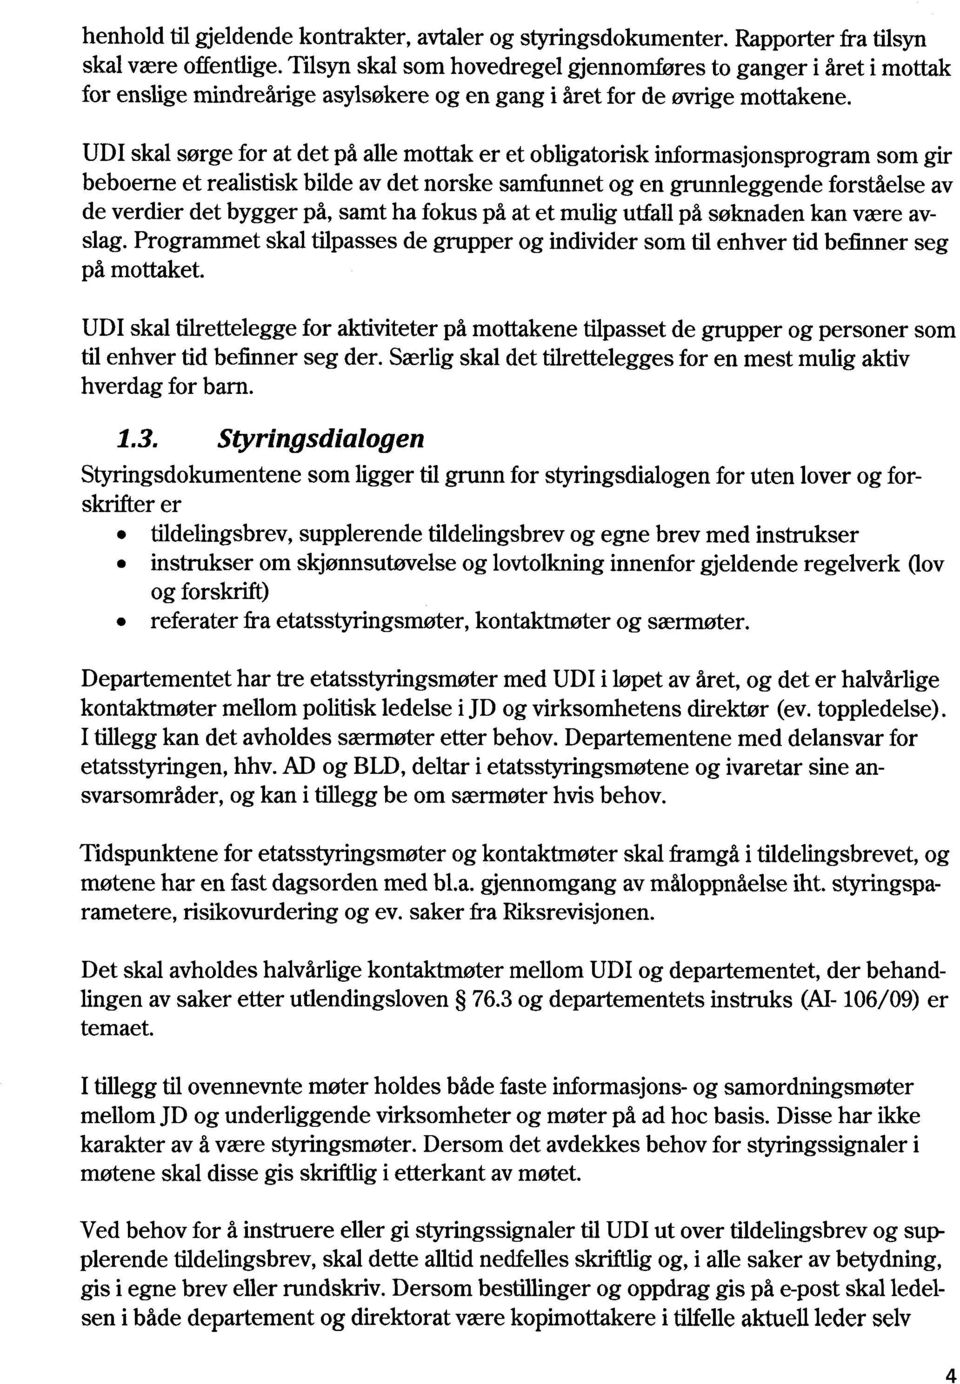 UDI skal sørge for at det på alle mottak er et obligatorisk inforrnasjonsprogram som gir beboerne et realistisk bilde av det norske samfunnet og en grunnleggende forståelse av de verdier det bygger